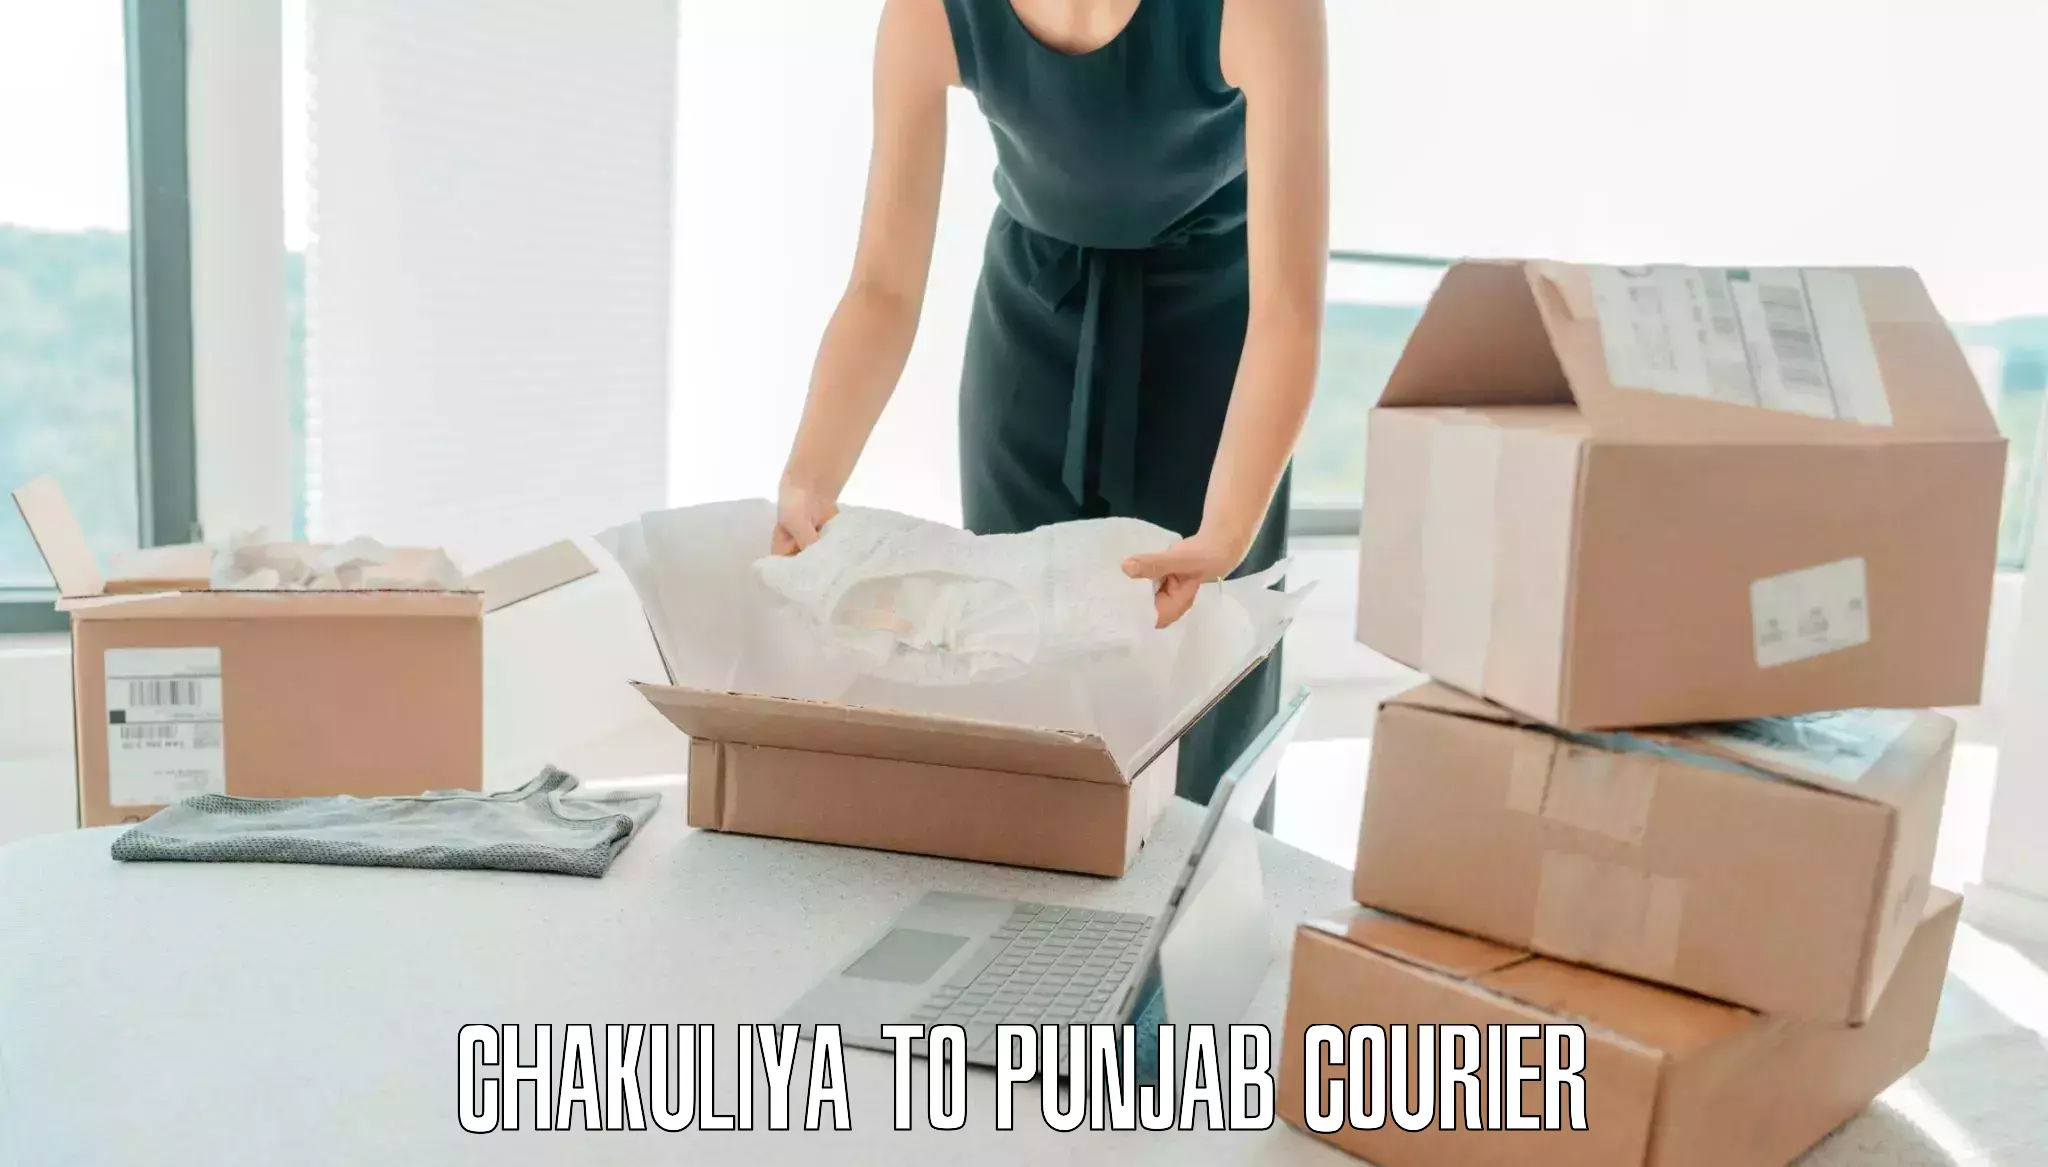 Baggage courier insights Chakuliya to Bhadaur